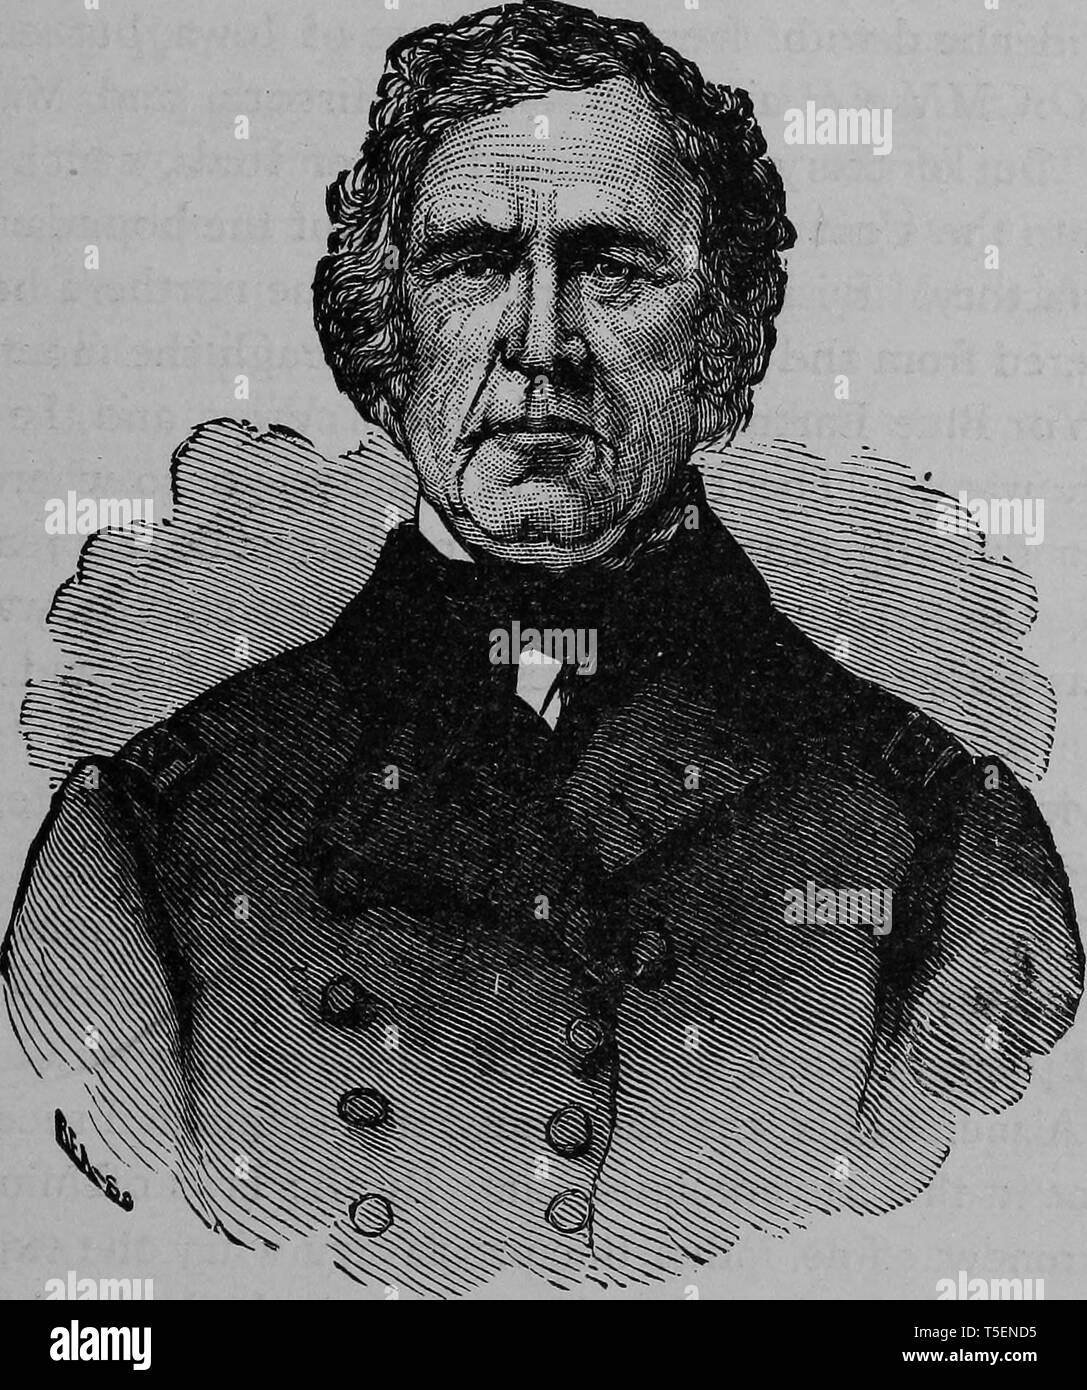 Portrait gravé du Général Zachary Taylor, le 12e président des États-Unis, du livre 'L'histoire politique de l'United States' par James Penny Boyd, 1888. Avec la permission de Internet Archive. () Banque D'Images